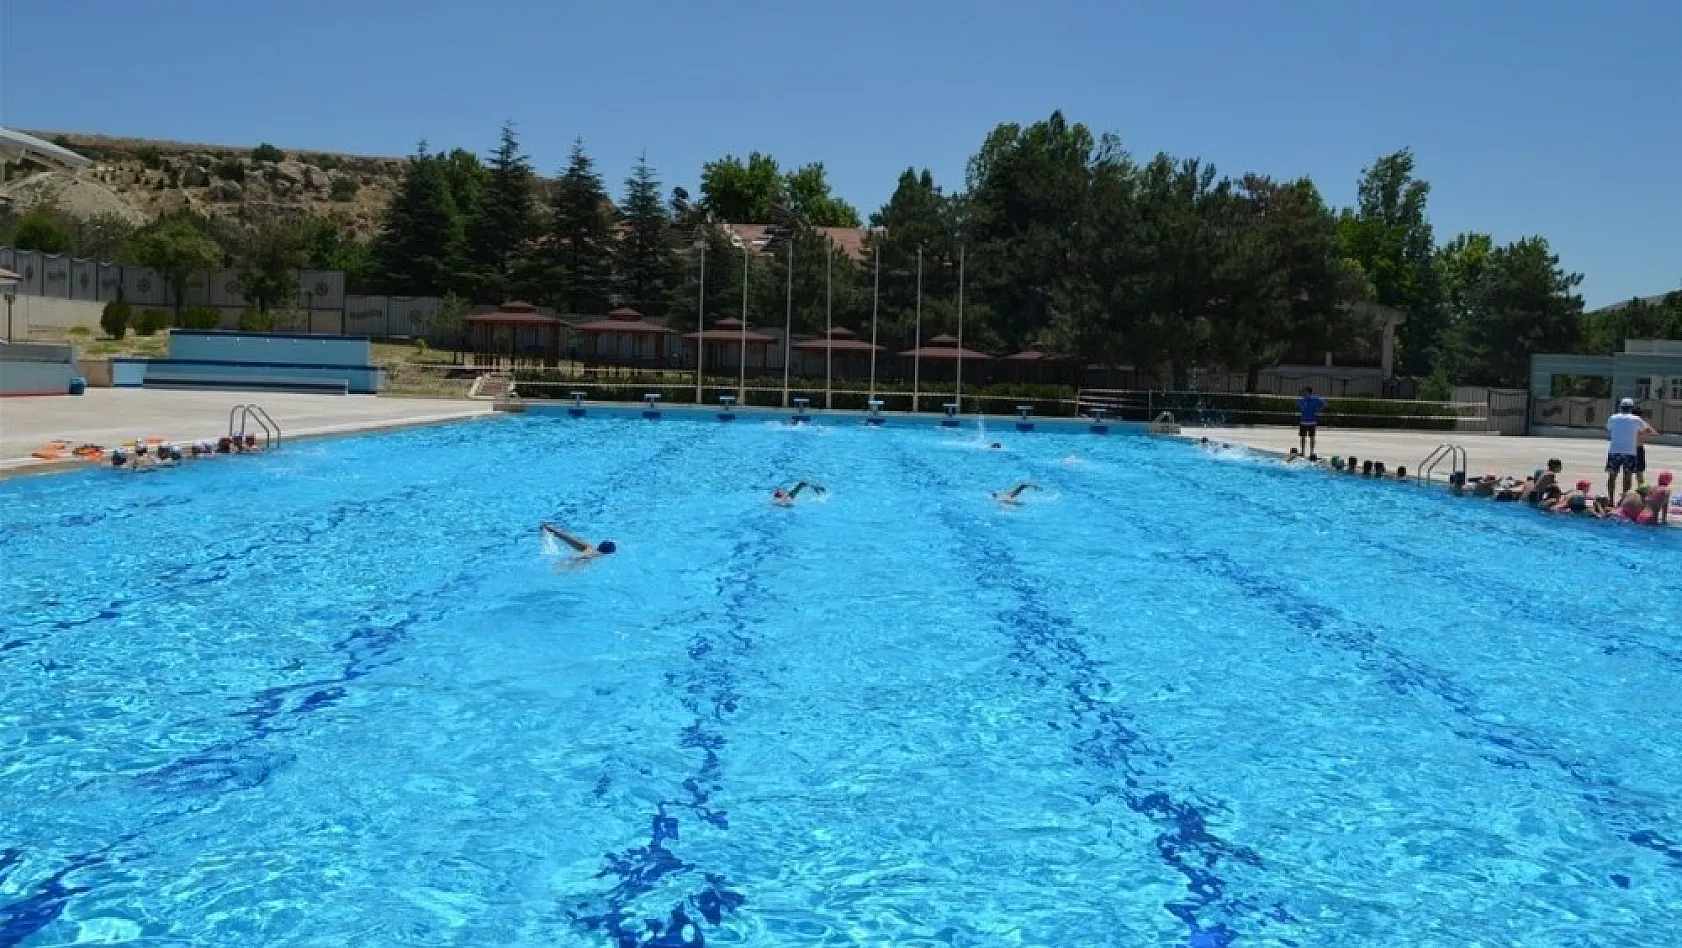 Olimpik Açık Yüzme Havuzu her gün hizmet verecek 